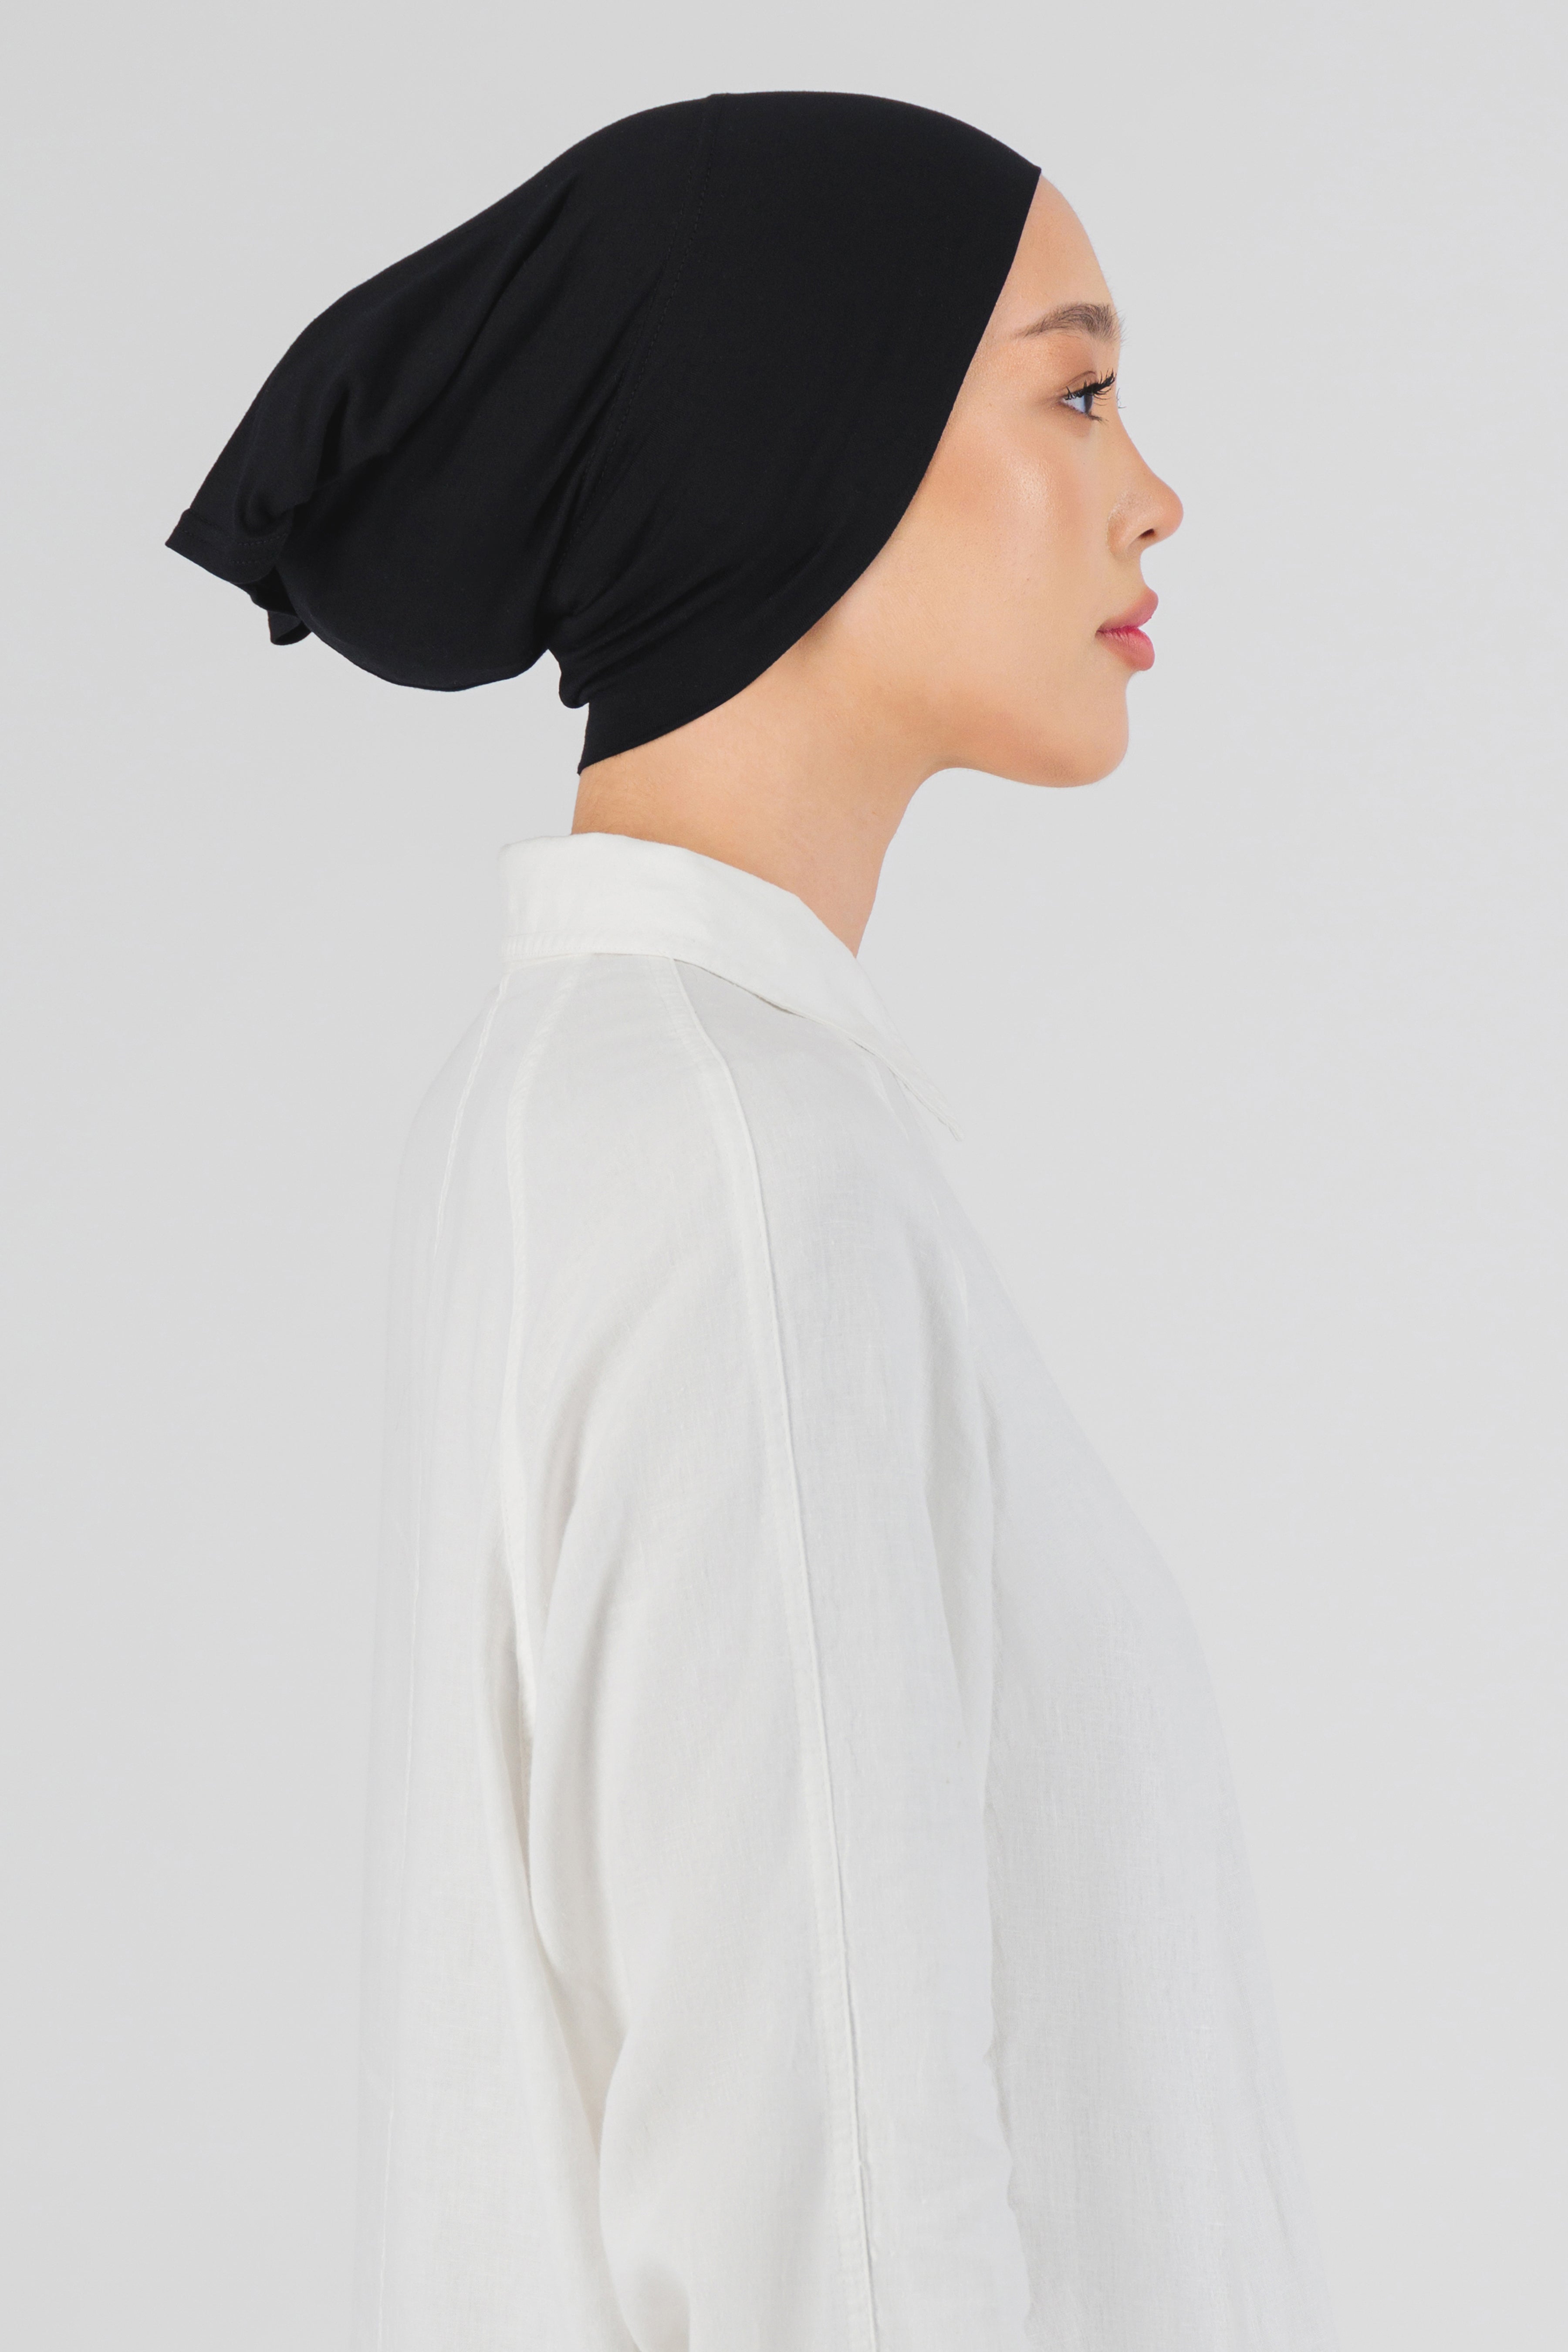 AE - Matching Chiffon Hijab Set - Black